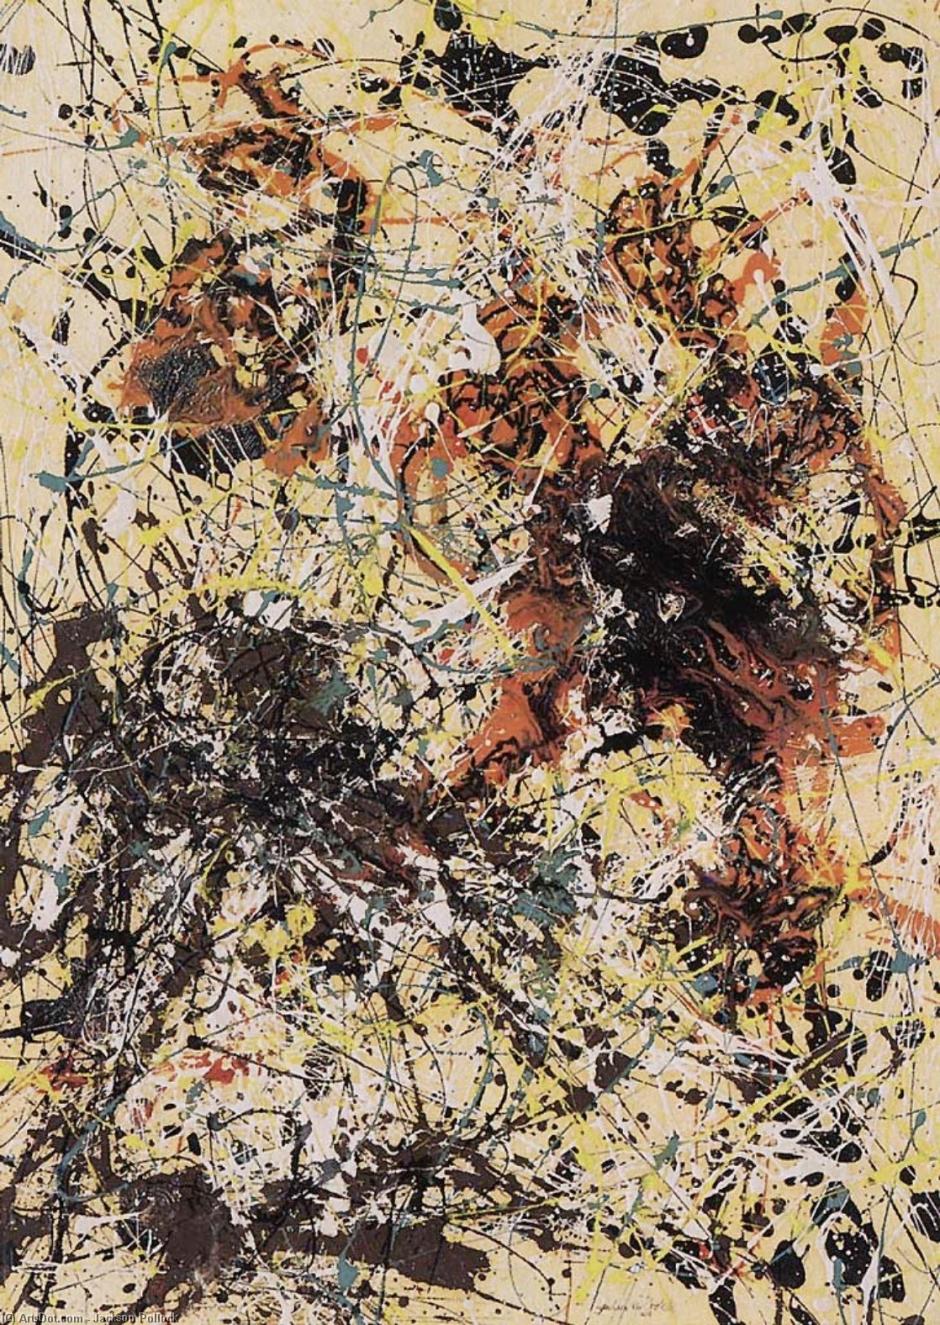 Esta obra supuso otro récord para el mundo del arte, puesto que era un cuadro que había estado expuesto en Estados Unidos y se vendió por cerca de 11 millones de euros en Christie's. Jackson Pollock empleó para él, de nuevo, la técnica de «goteo» y combinó colores como el blanco, el amarillo, el marrón o el negro, entre otros.